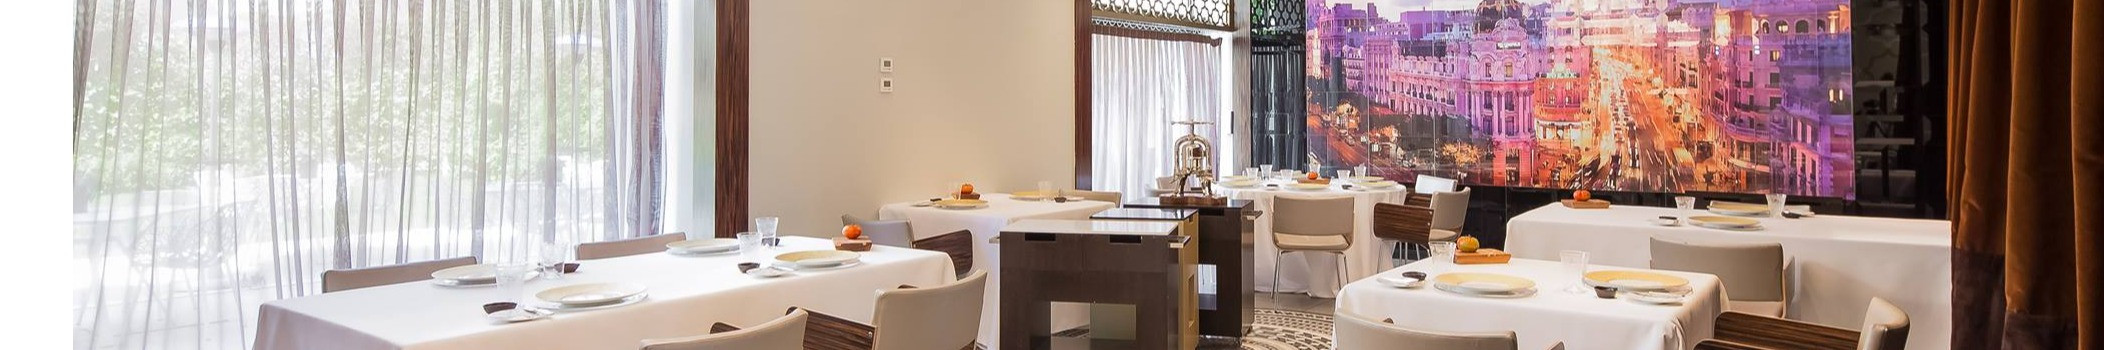 Un espacio elegante y sofisticado, Restaurante Ramon Freixa